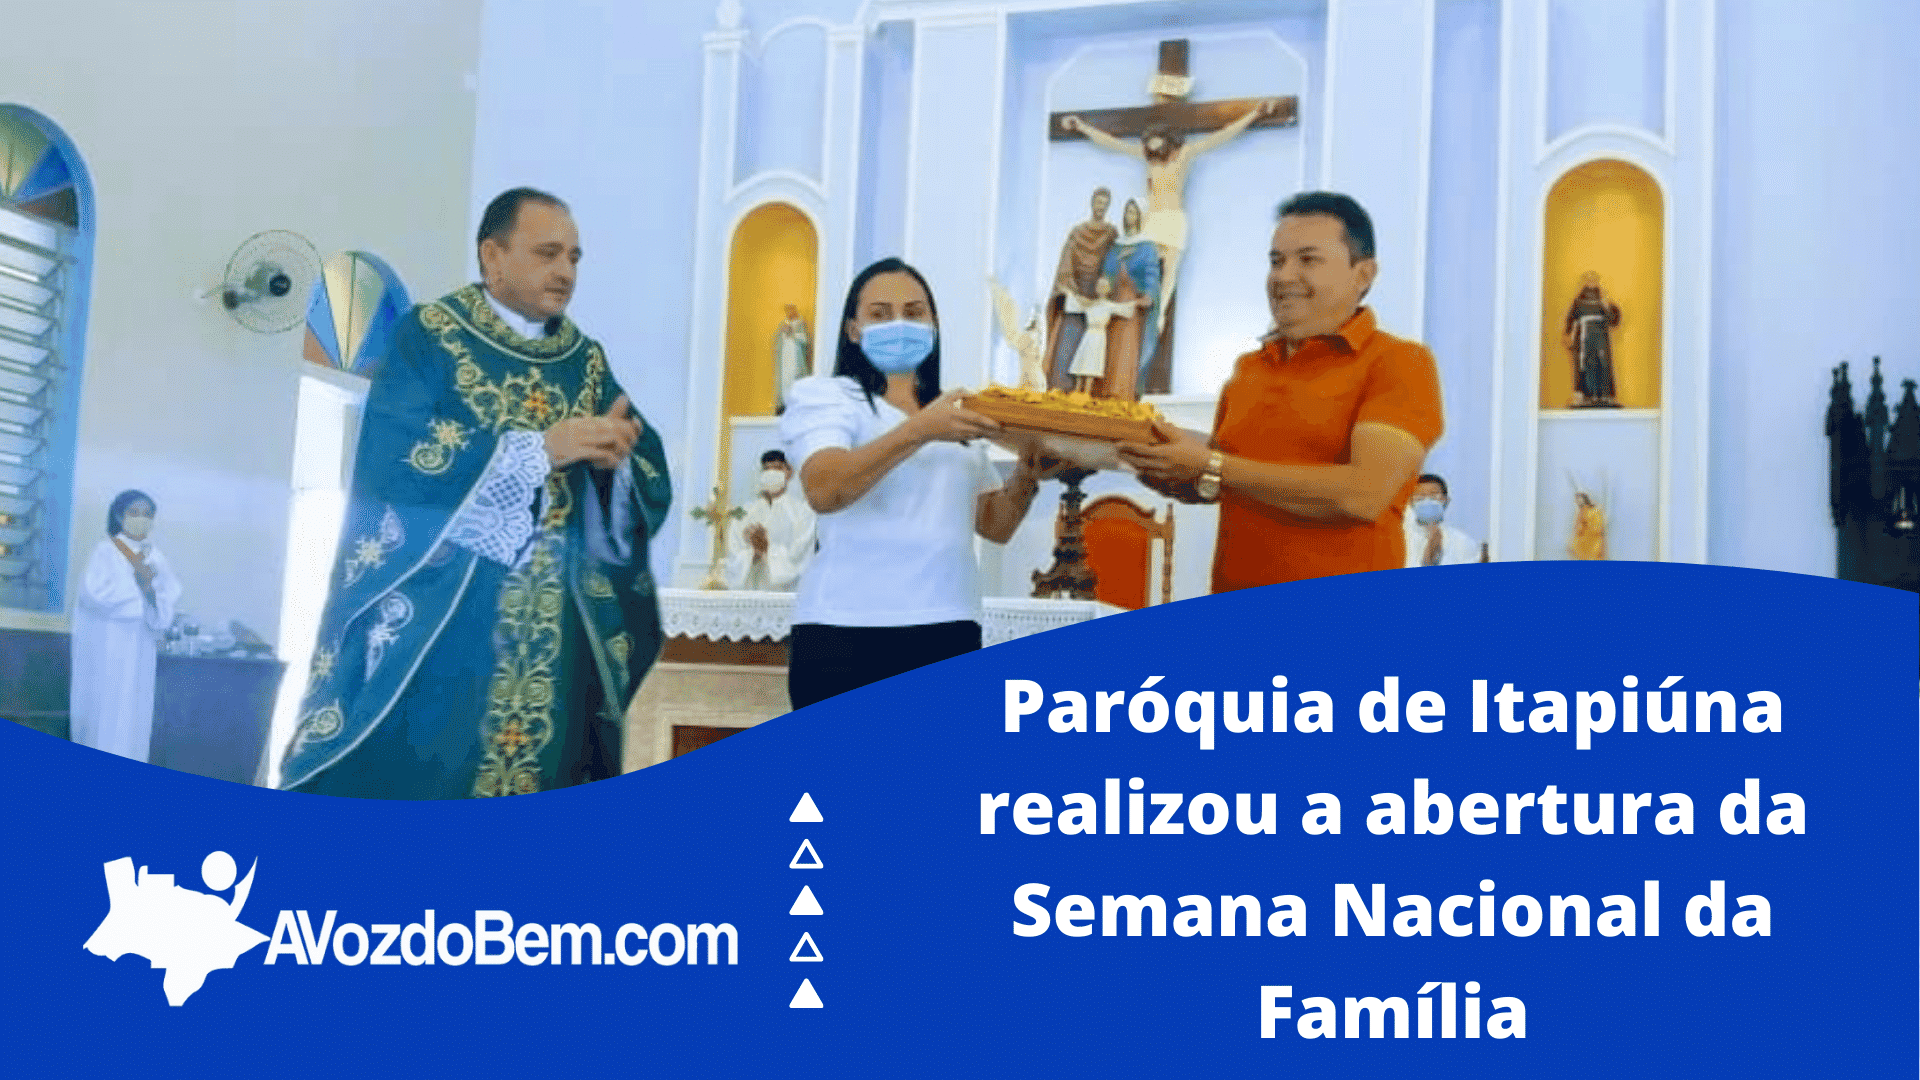 Paróquia de Itapiúna realizou a abertura da Semana Nacional da Família